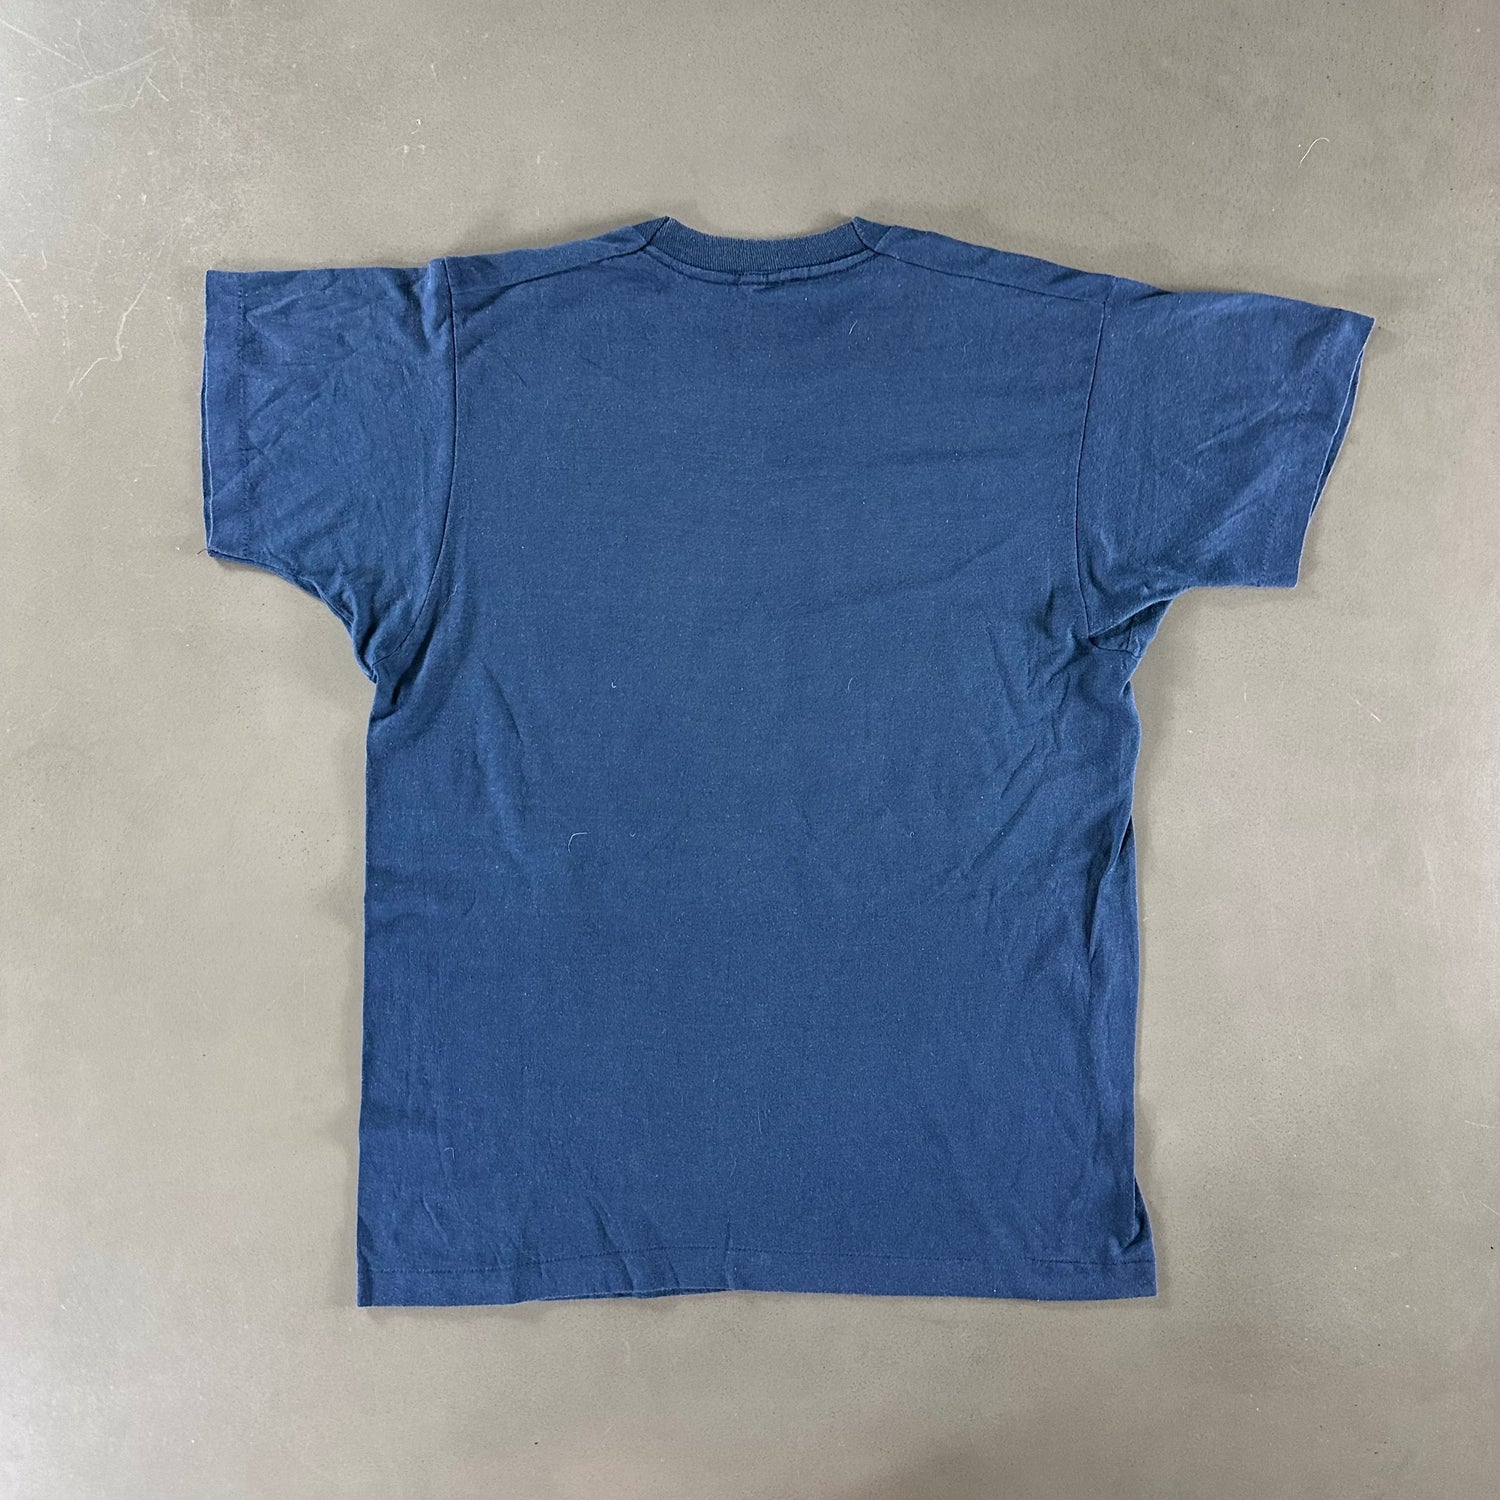 Vintage 1980s Fan Club T-shirt size Large